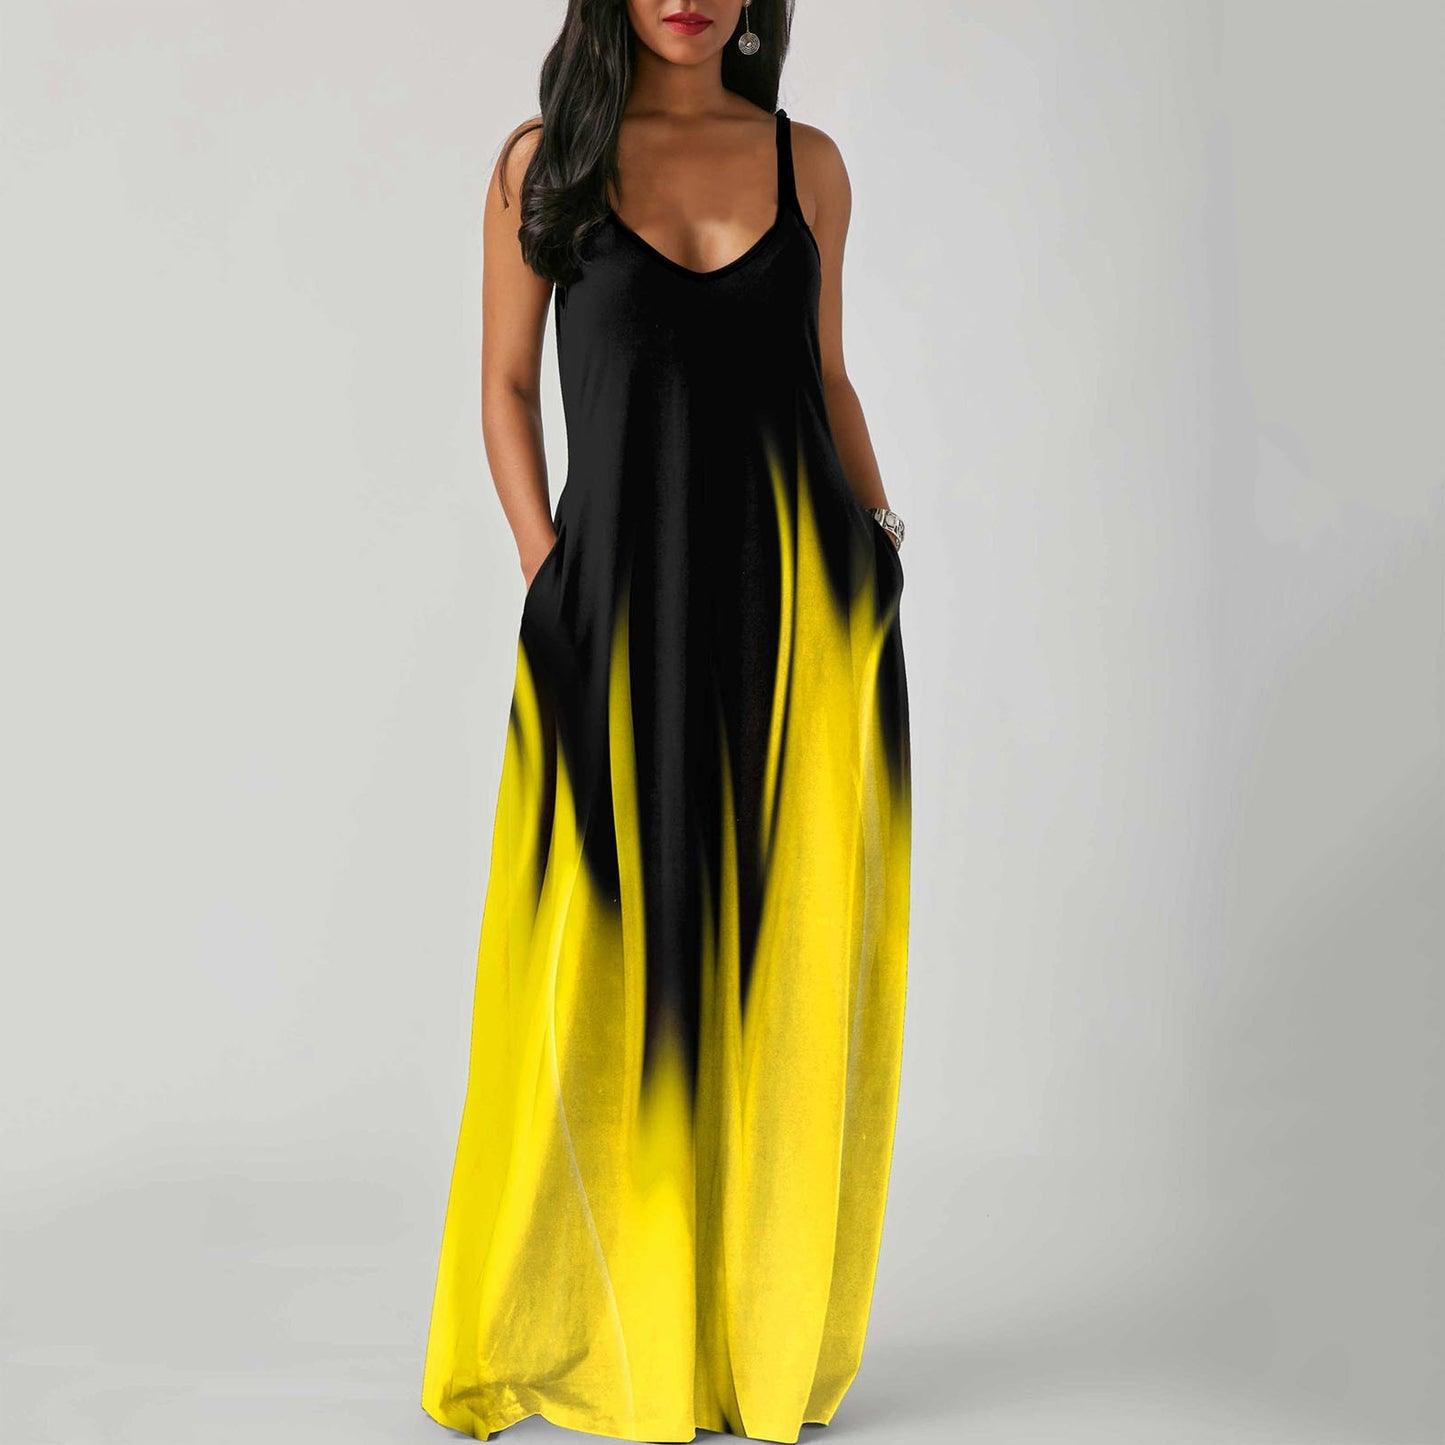 Elegant Fashion O-neck Sleeveless Floor-length Dresses - Beige Street